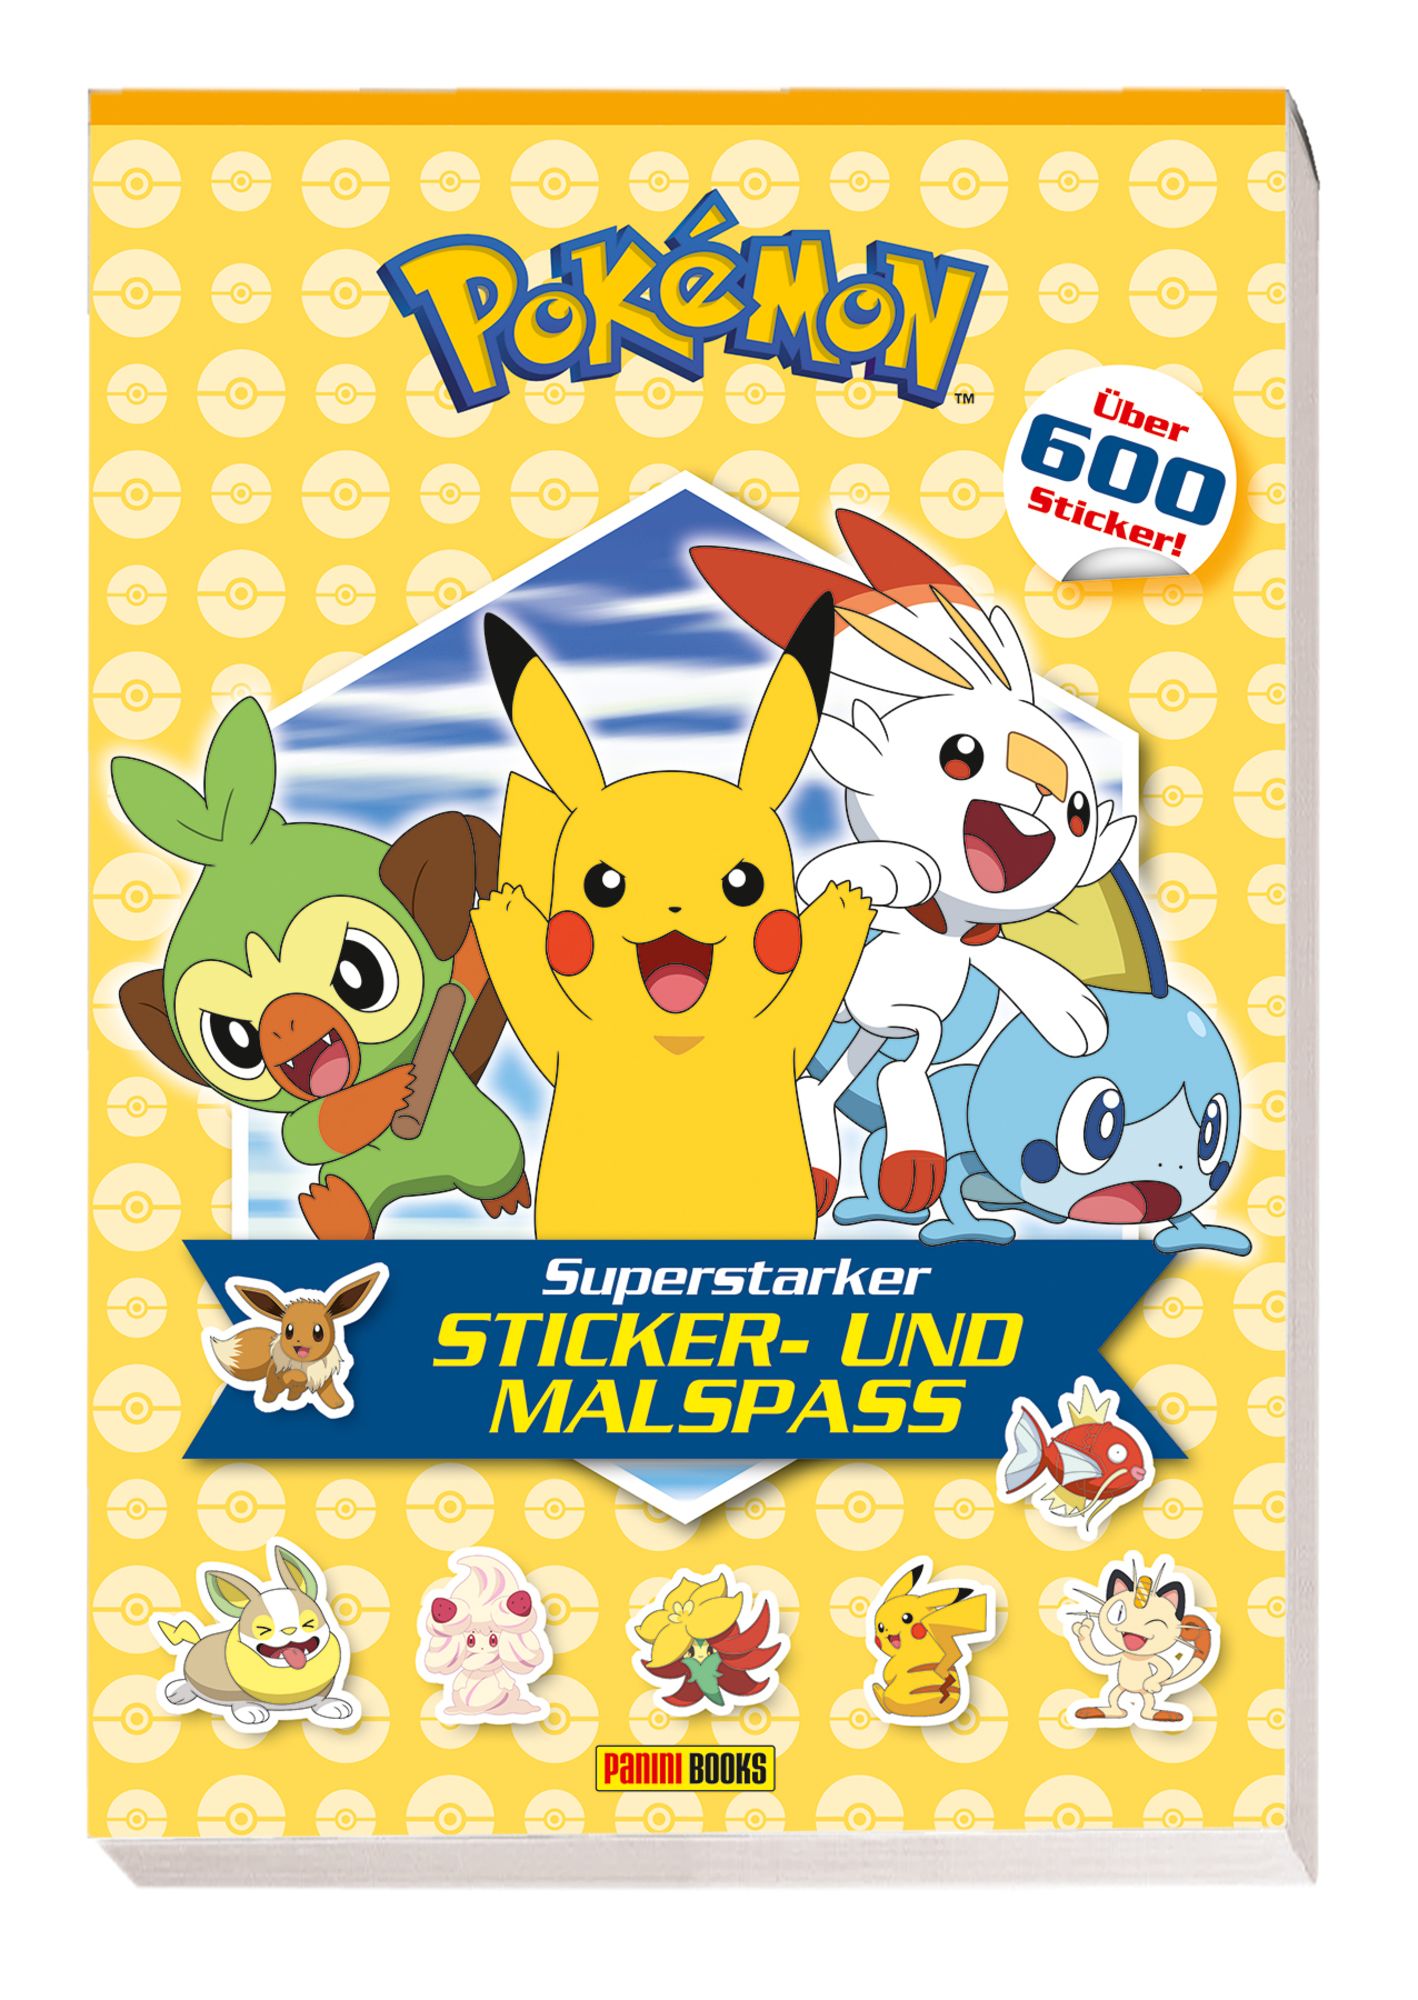 Pokémon: Superstarker Sticker- und Malspaß' von 'Panini' - Buch -  '978-3-8332-3937-3